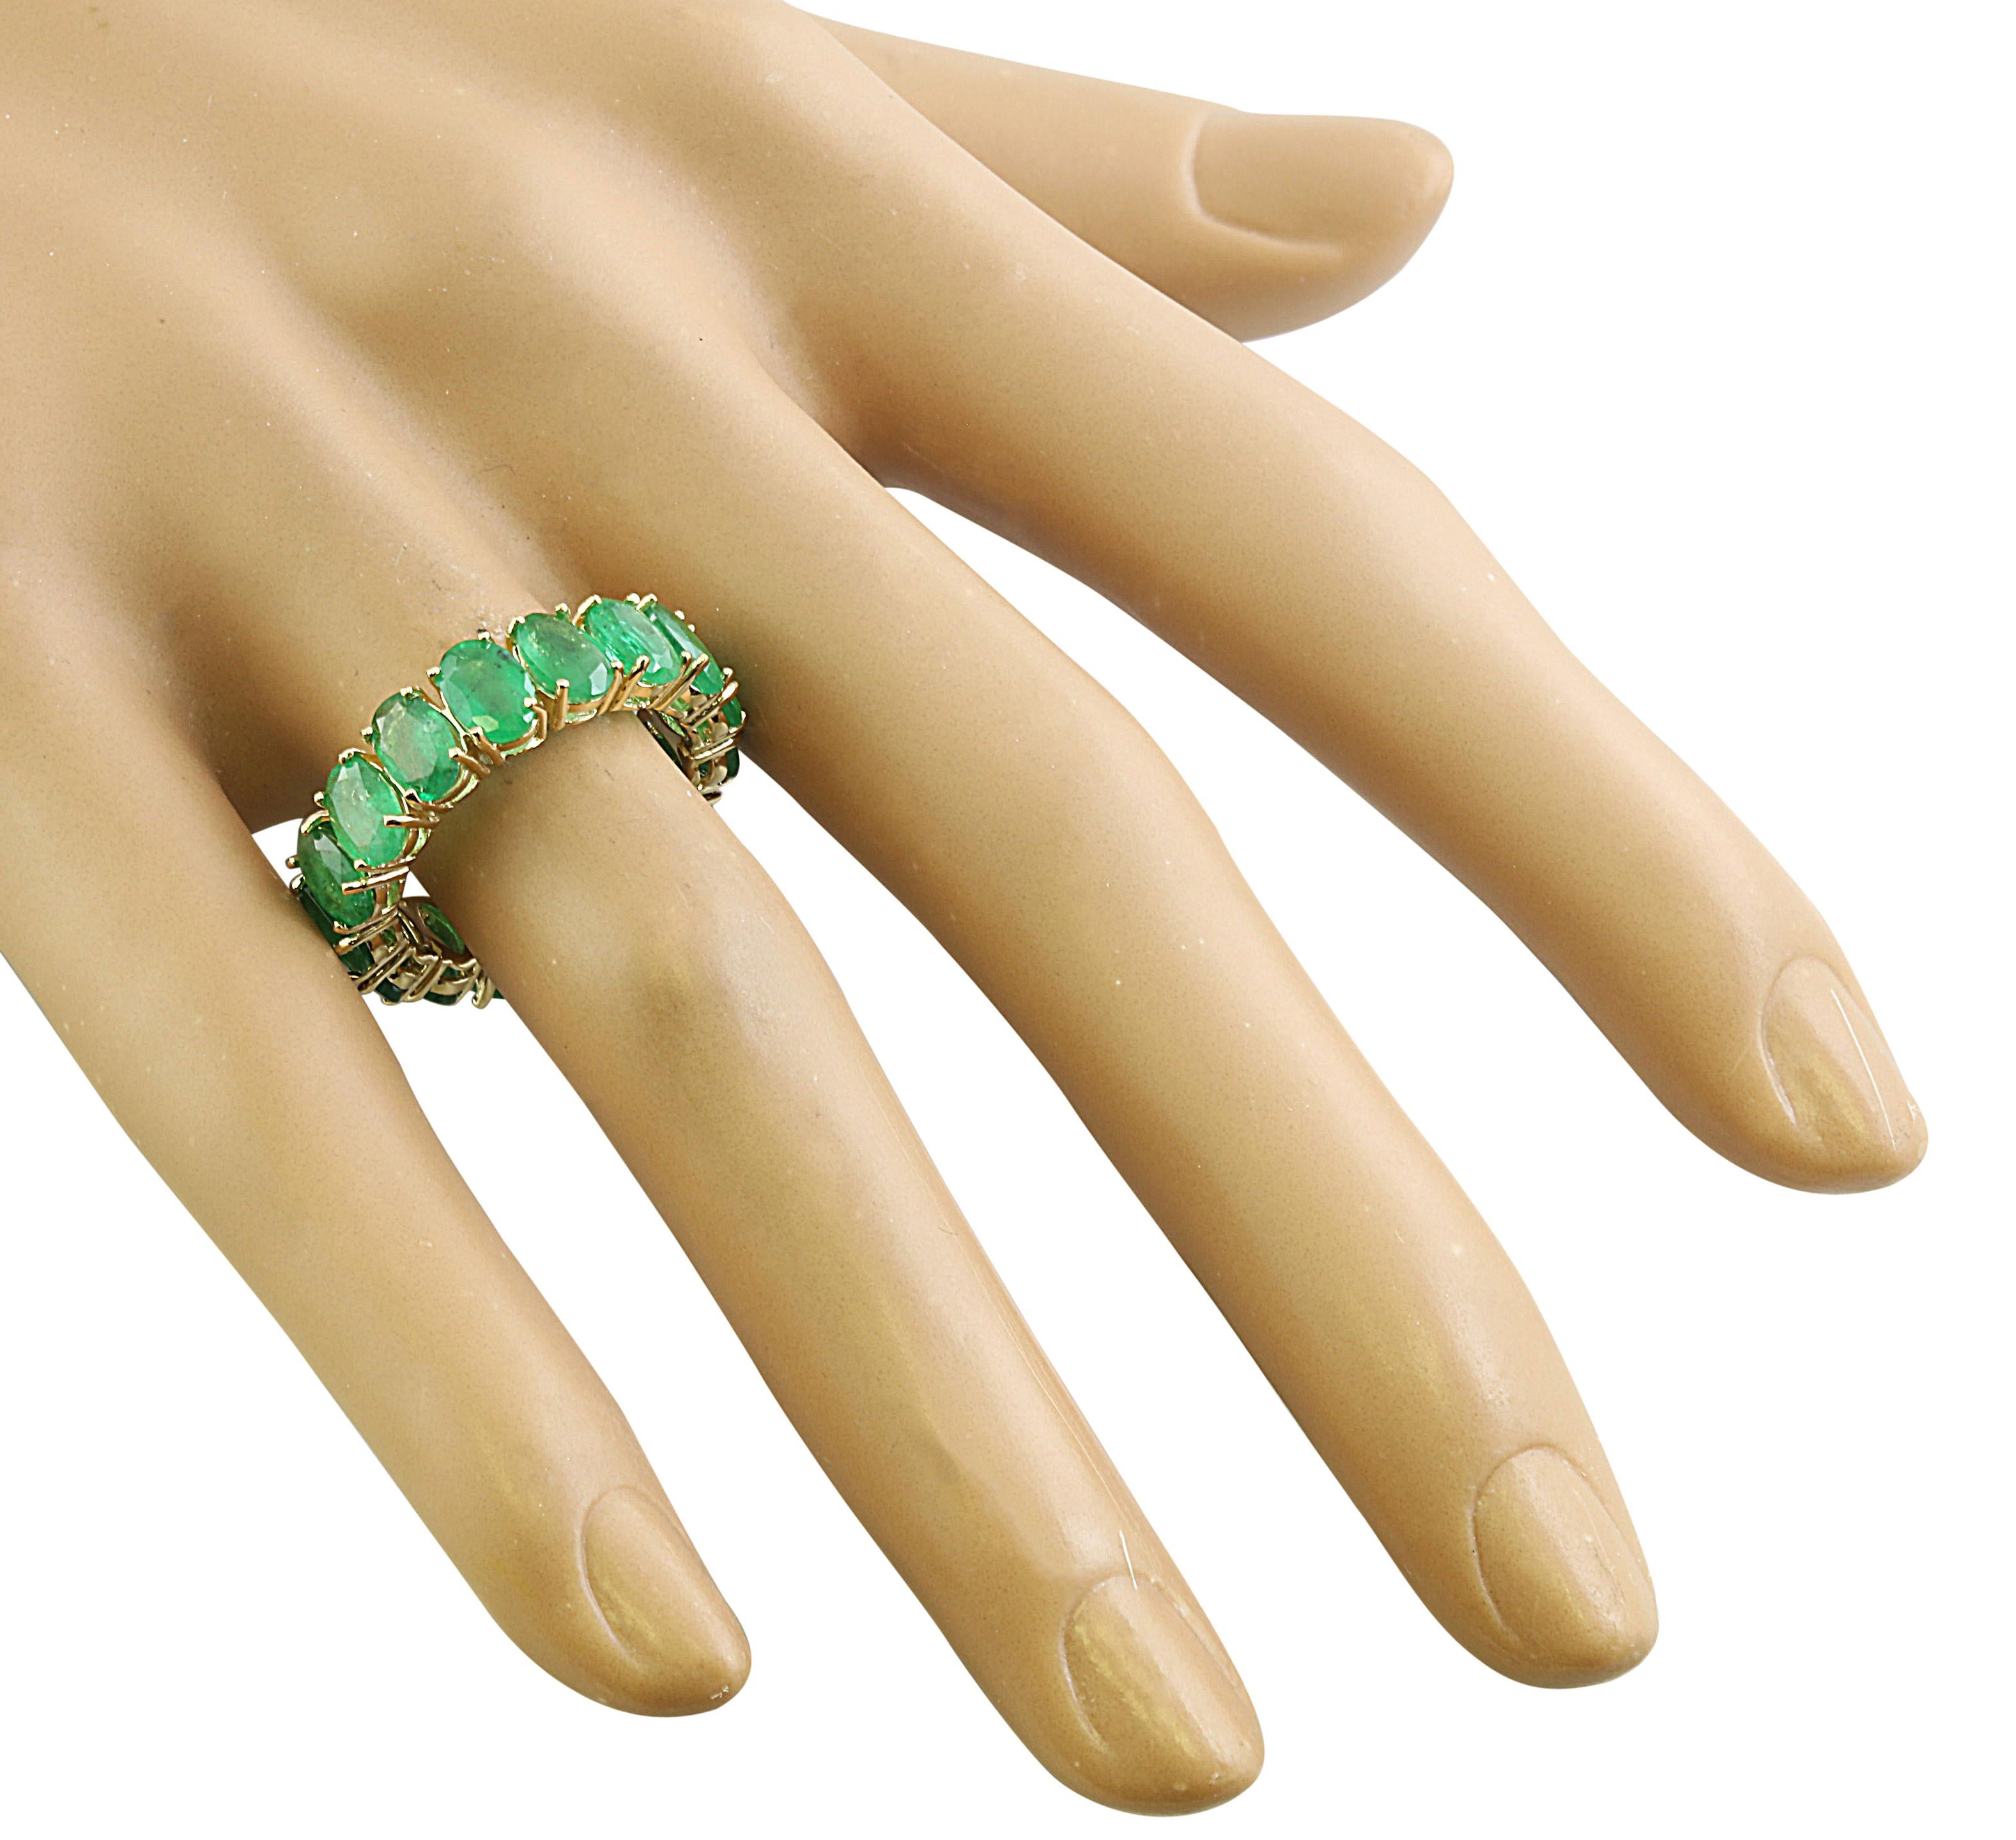 Wir präsentieren ein außergewöhnliches Meisterwerk zeitloser Eleganz - den 6,16-Karat-Smaragdring aus massivem Gelbgold (14 Karat), ein Symbol für Luxus und Raffinesse.

Dieser Ring für Ringgröße 7 wiegt 3,8 Gramm und bietet einen luxuriösen und